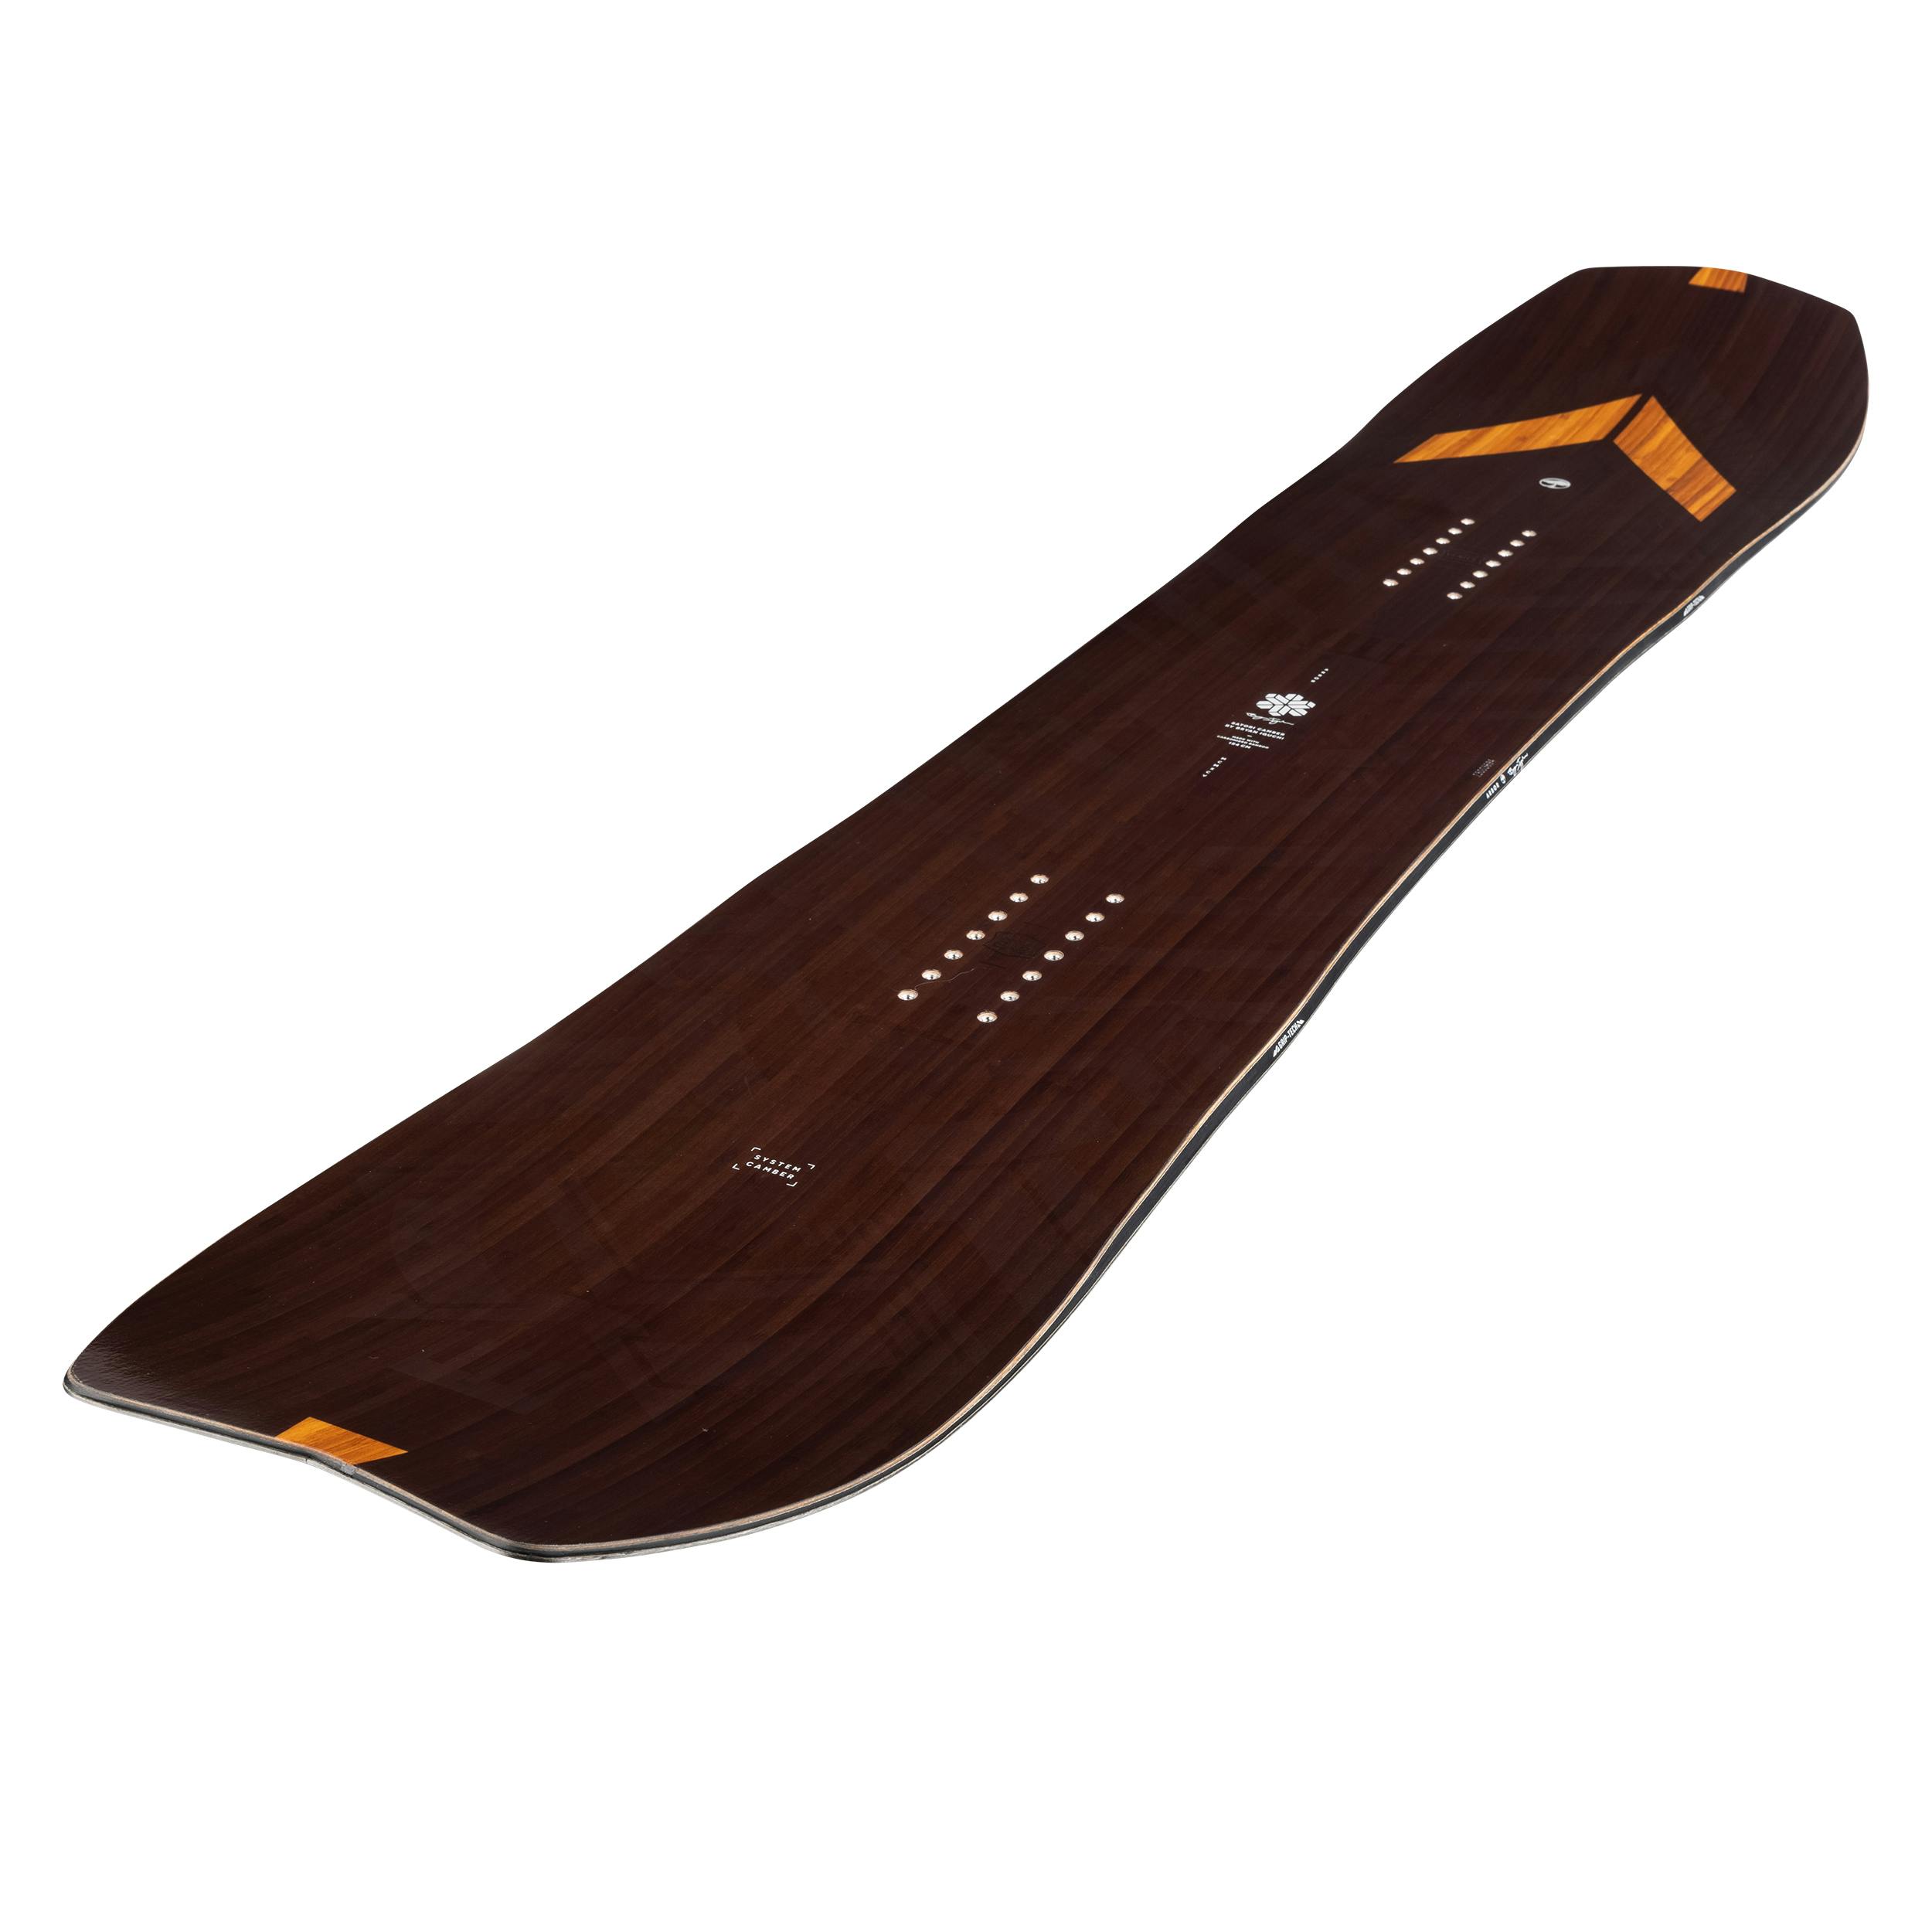 Arbor Satori Camber Snowboard · 2024 · 148 cm